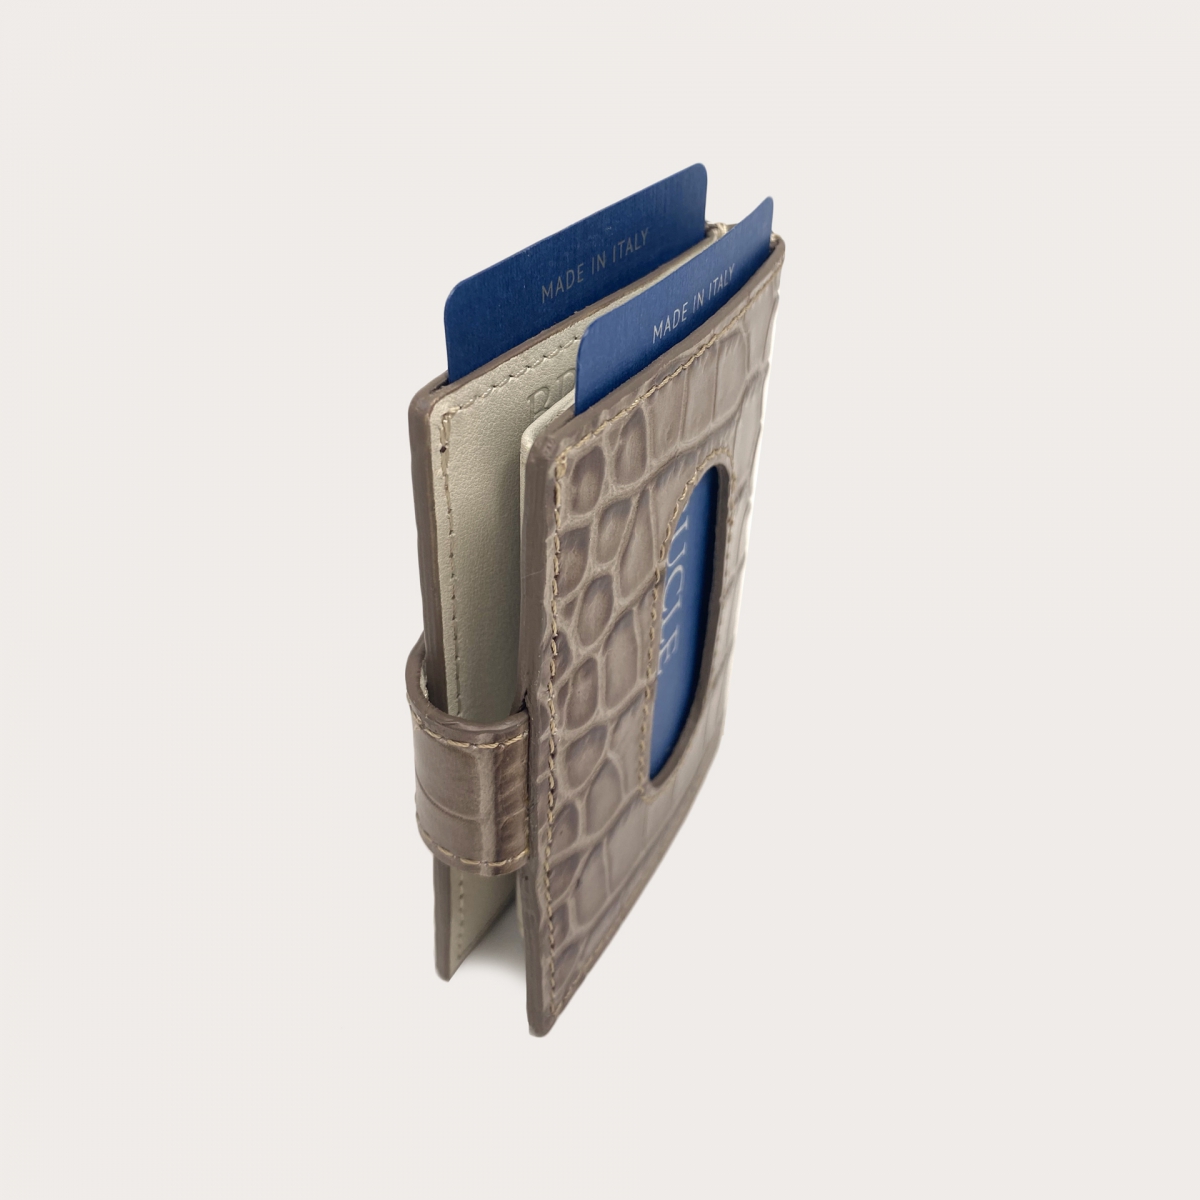 Porte carte de crédit gris tourterelle en cuir bovine imprimée croco